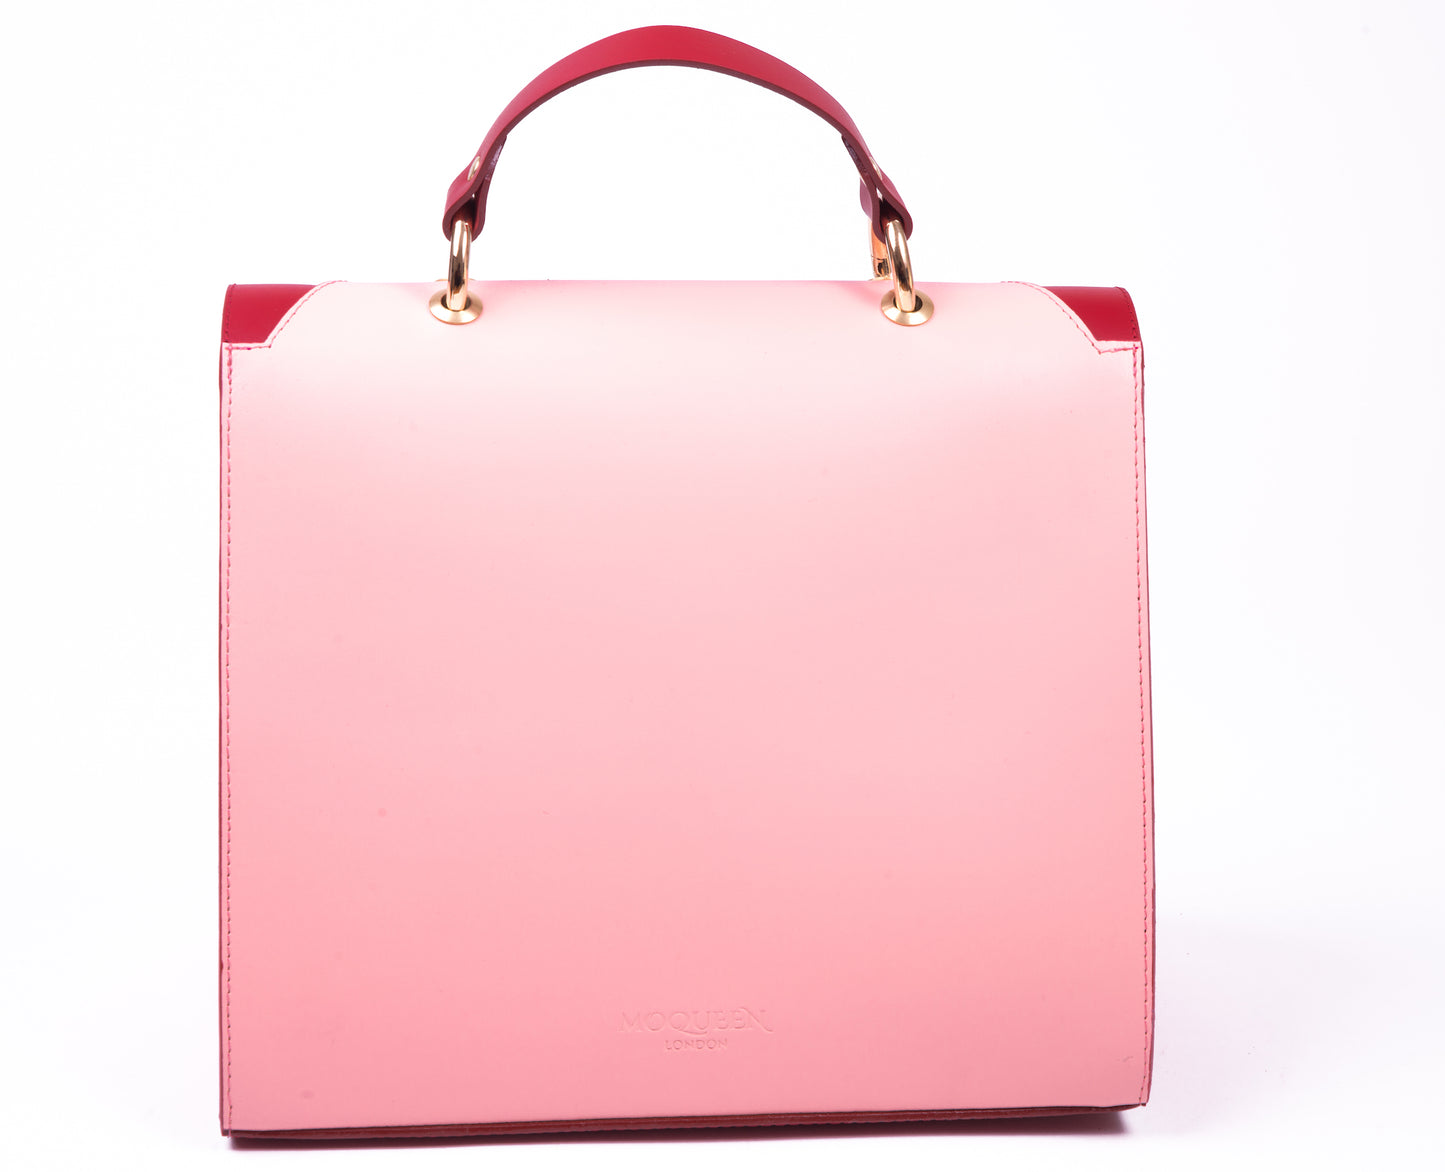 Valiant Poppy 'V' leather shoulder handbag